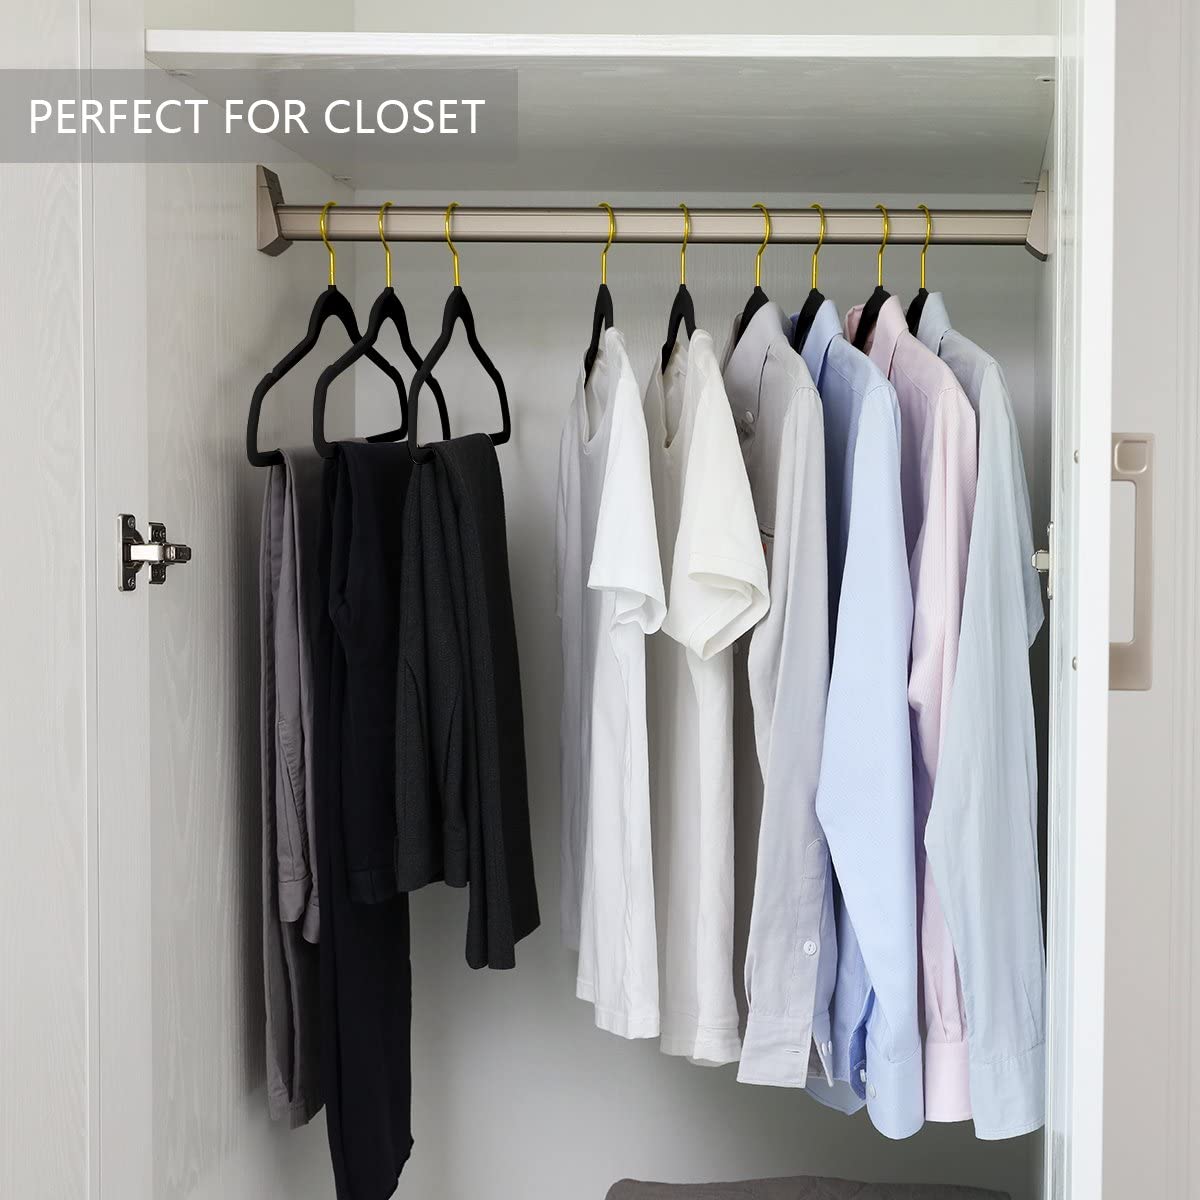 MIZGI Premium Velvet Hangers (50 Pack) Heavy Duty - Non Slip Felt Hangers -  Aqua Blue - Rose Gold Hooks,Space Saving Clothes Hangers,Durable Strong